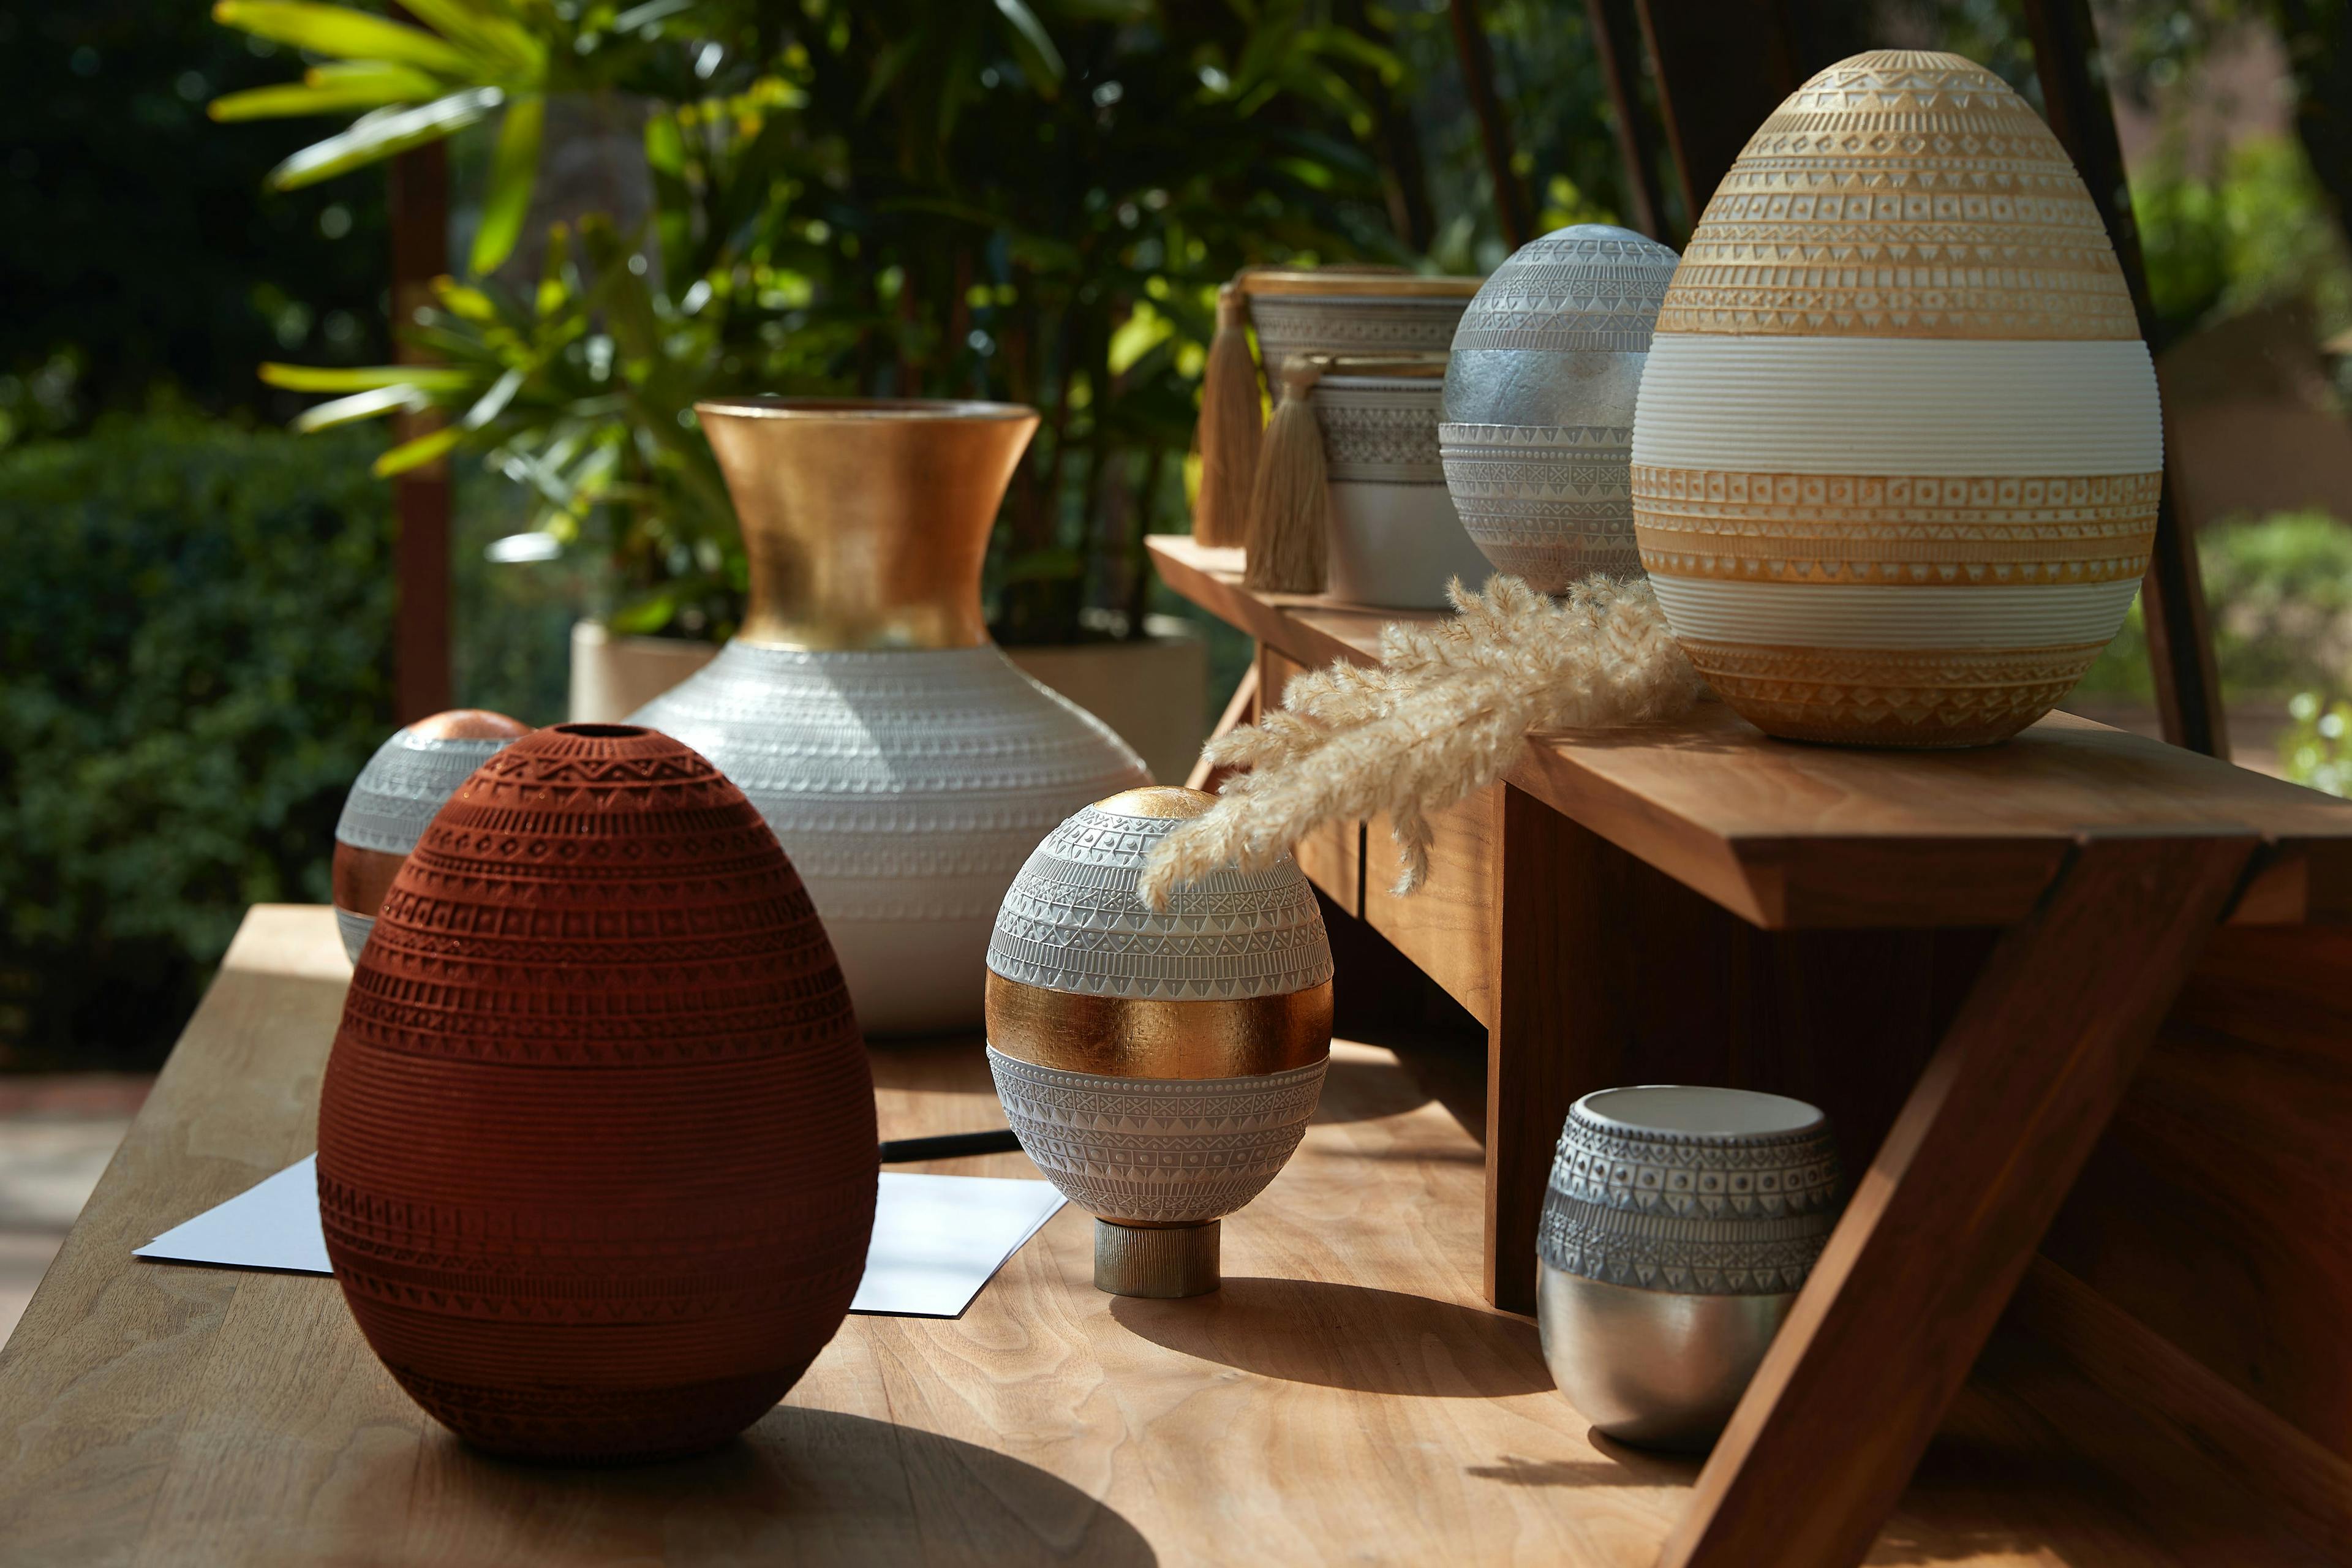 pottery jar cookware pot indoors interior design vase urn